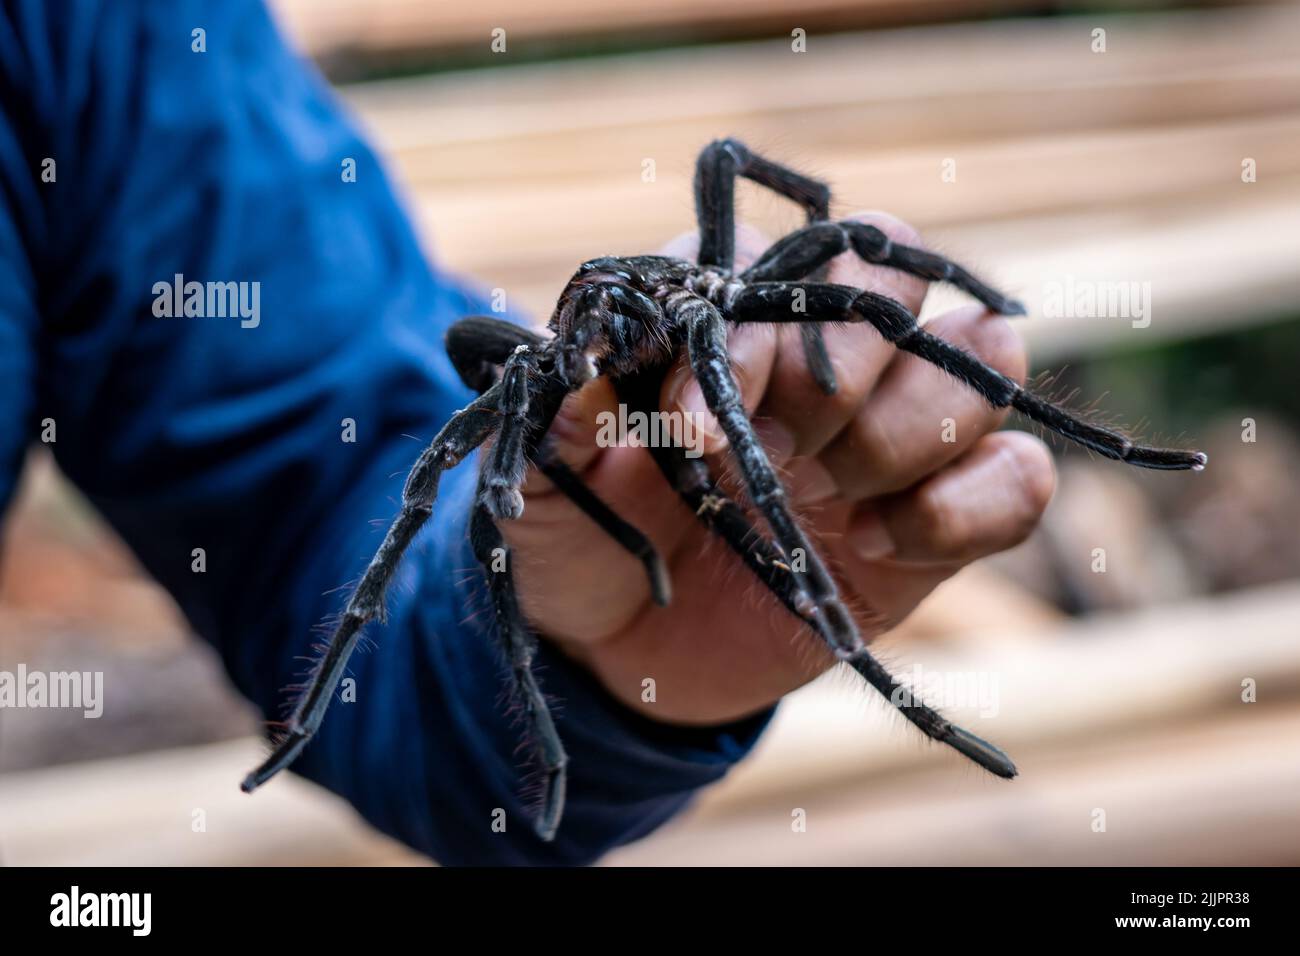 Le tarantula (Theraphosa blondi) de Goliath, en Amazonie péruvienne, est la plus grande araignée du monde Banque D'Images